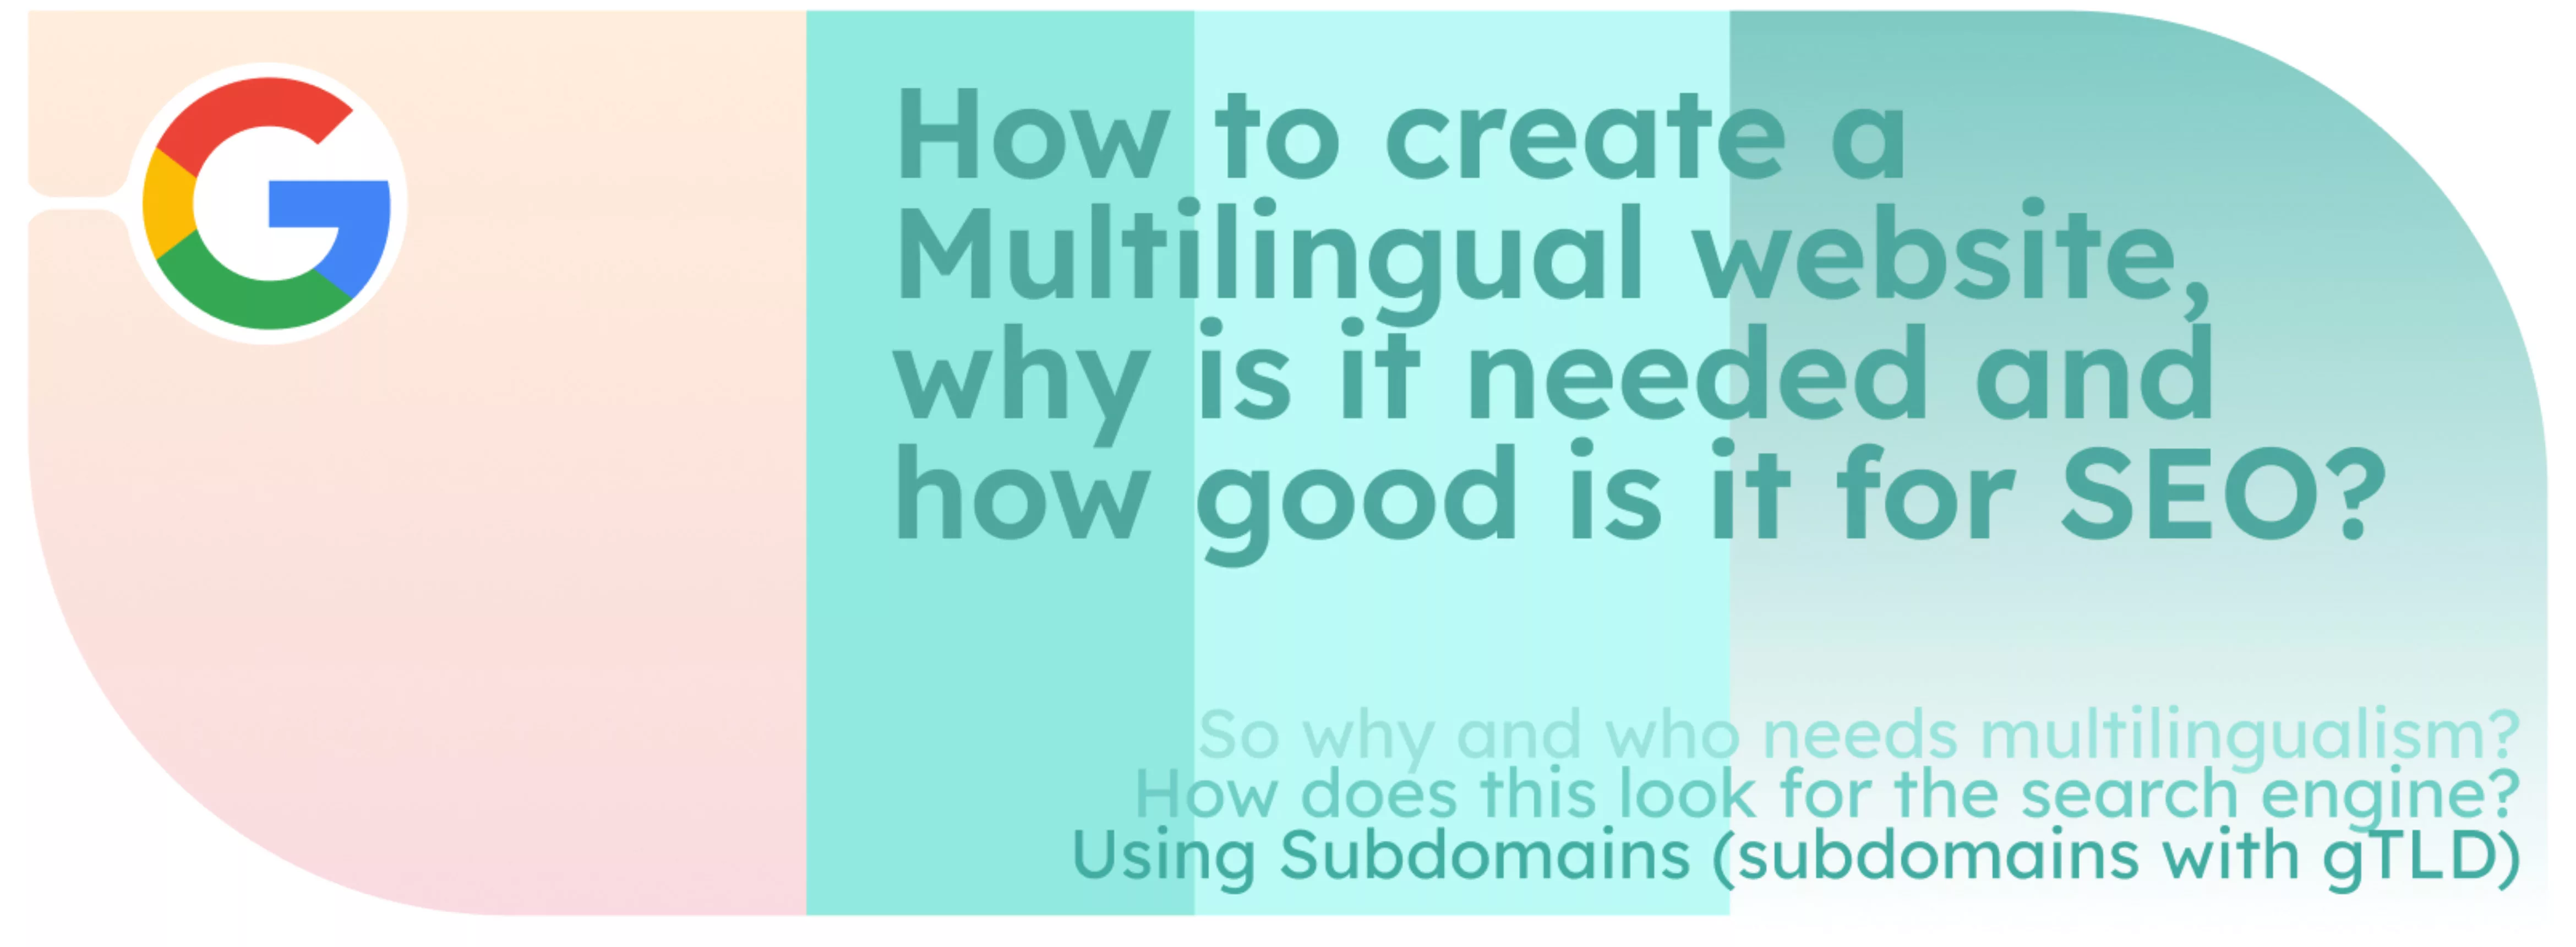 ¿Cómo crear un sitio web multilingüe, por qué es necesario y qué ventajas tiene para el SEO?